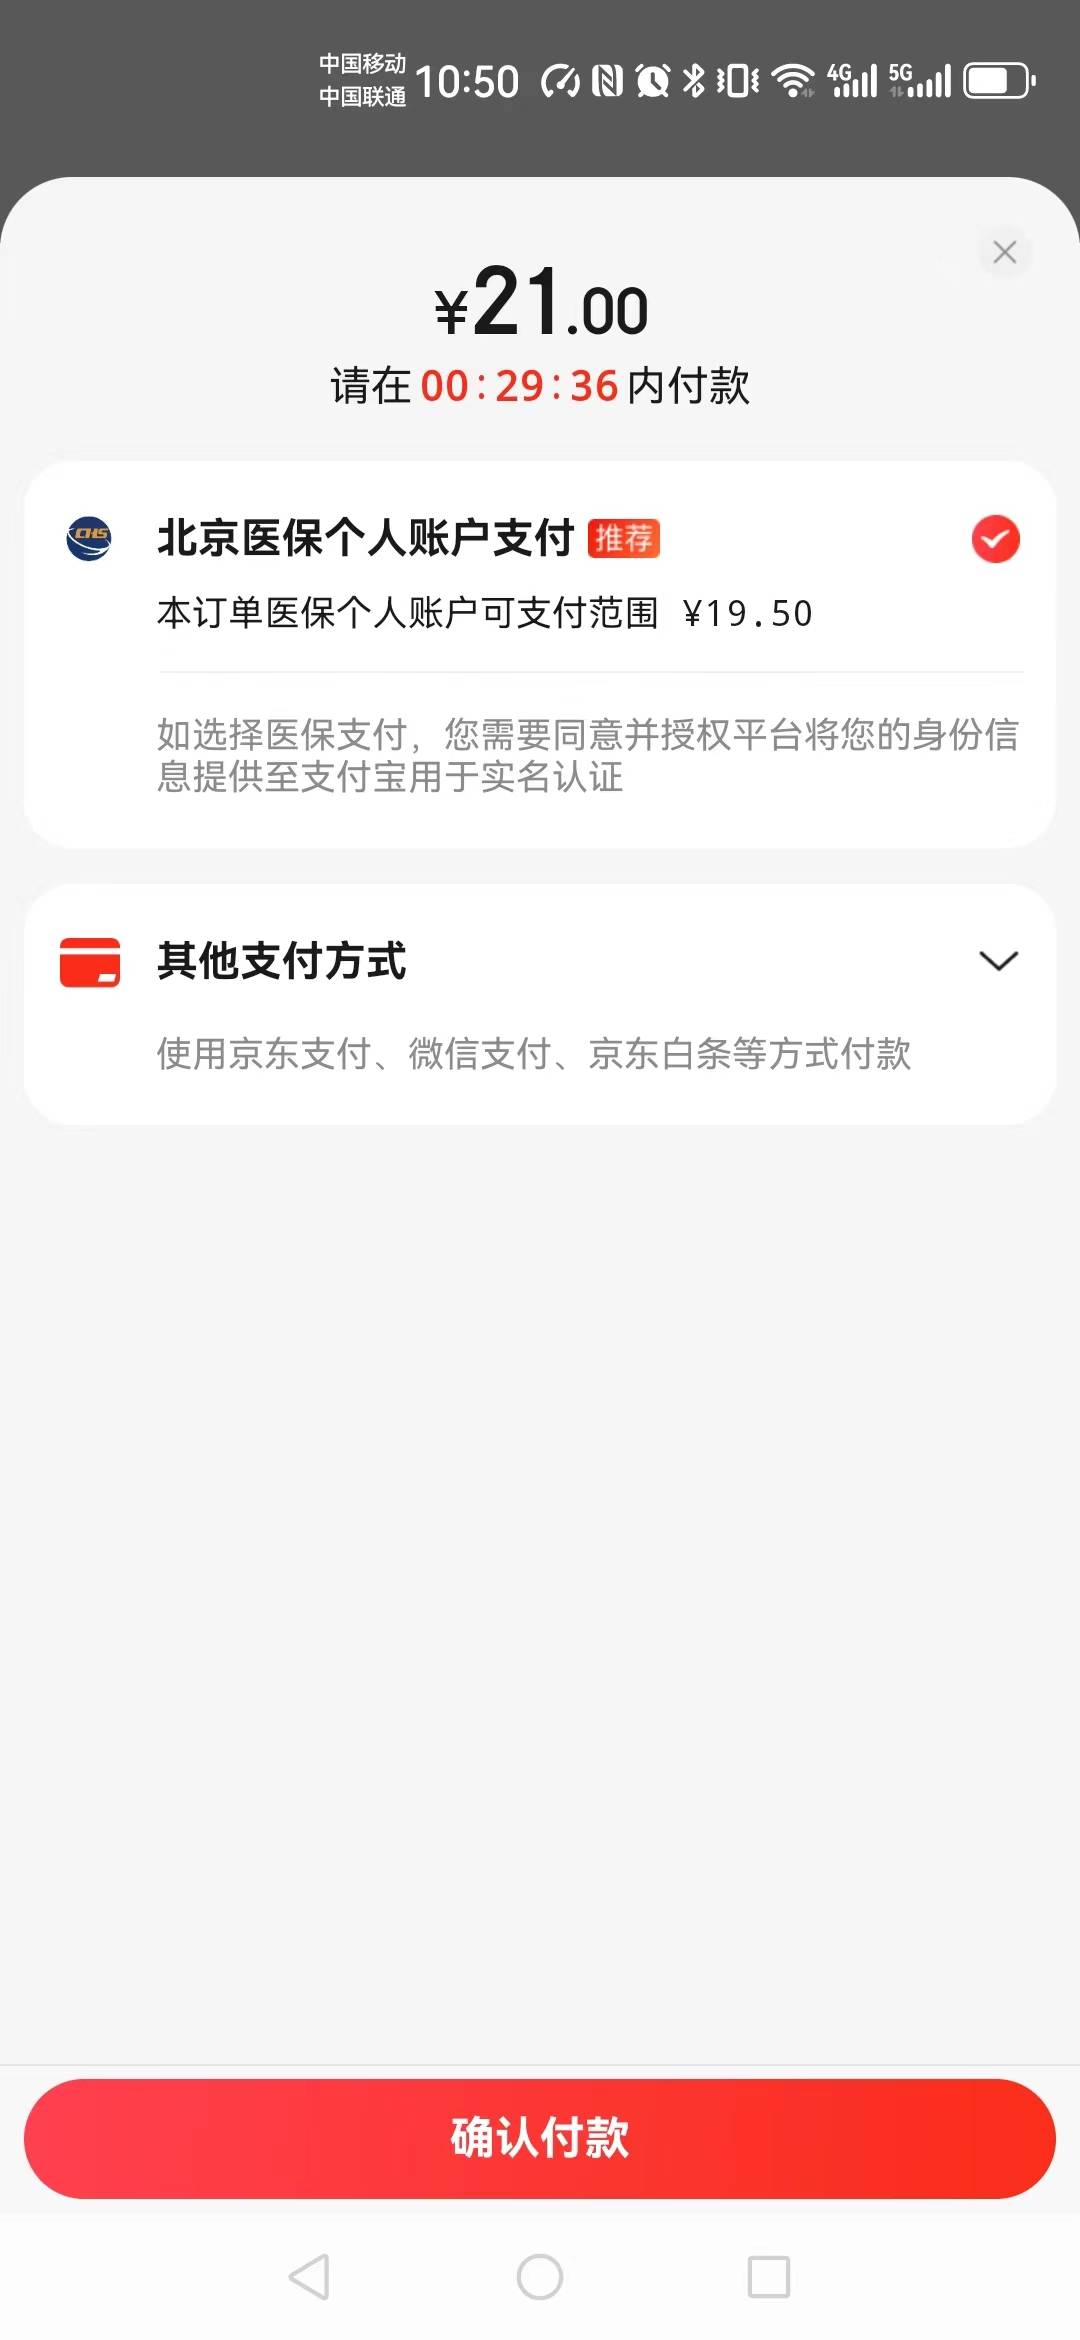 搜狐医药 | 7月1日北京开通医保个人账户线上购药，可支付宝结算查询